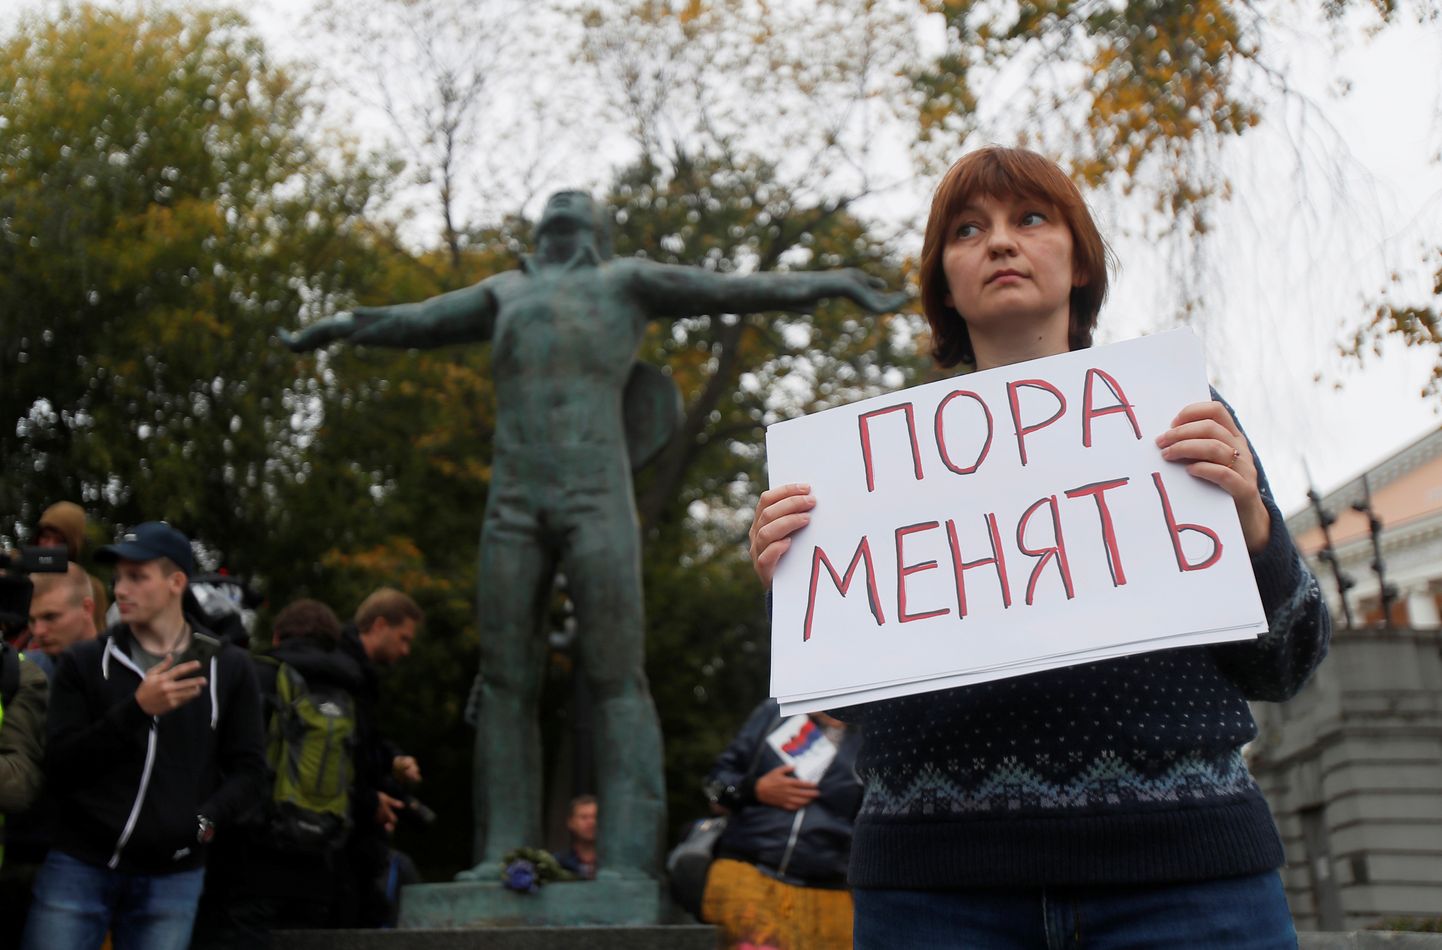 Jau ceturto sestdienu pēc kārtas Maskavā turpinās protesta akcijas